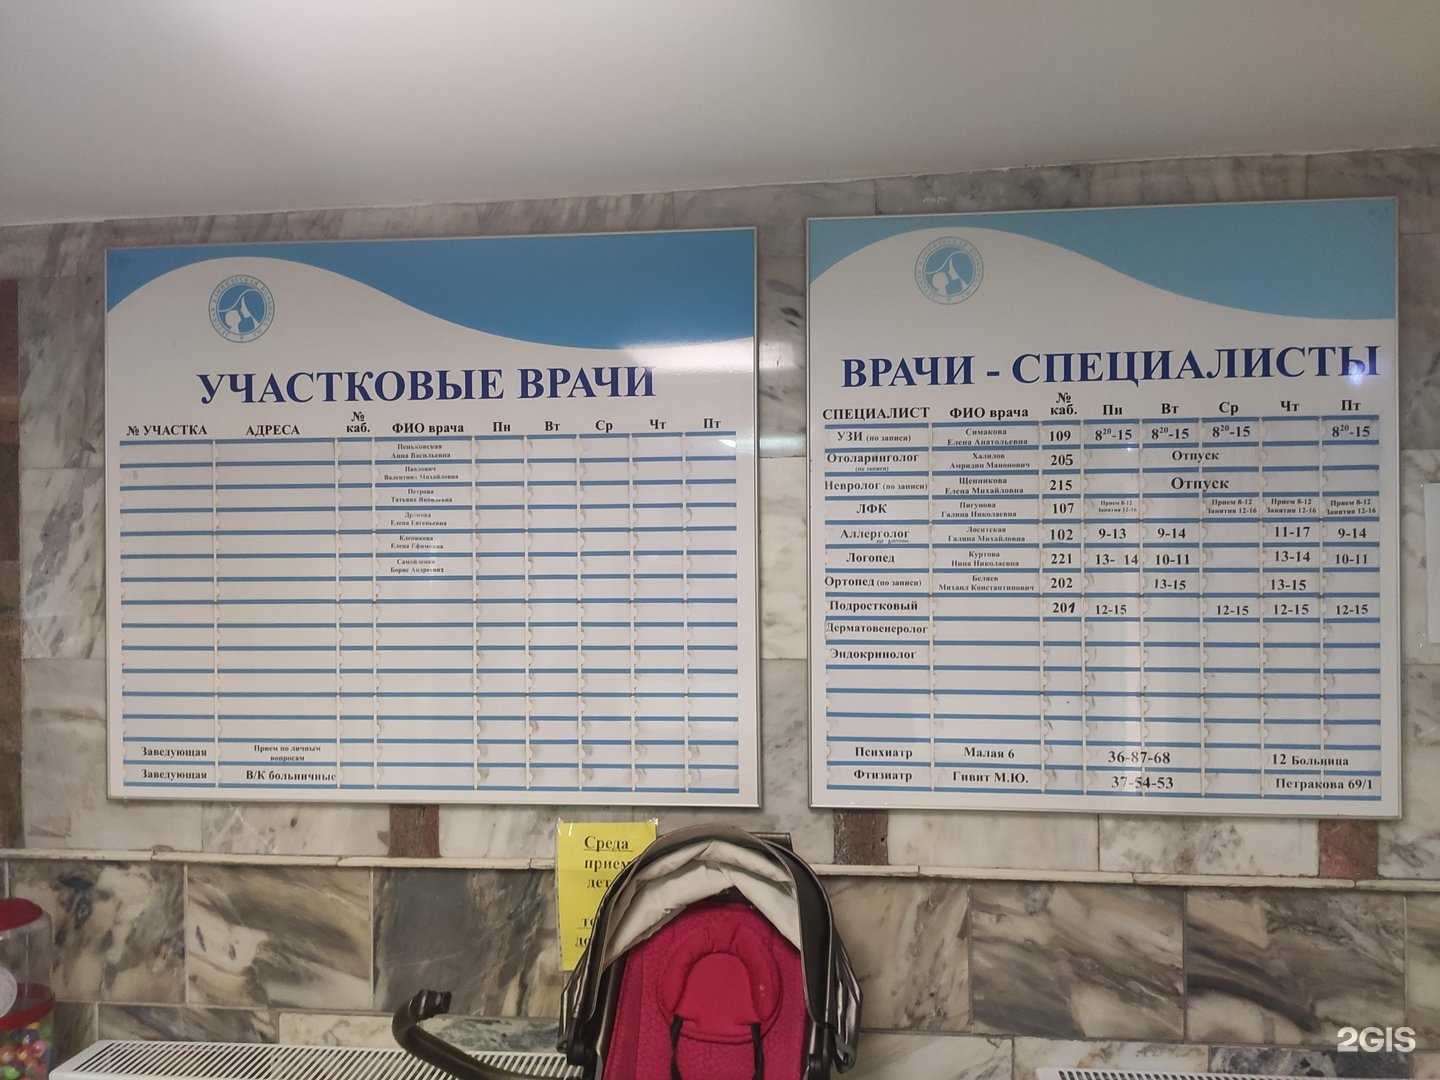 Тореза 15 детская поликлиника Новокузнецк